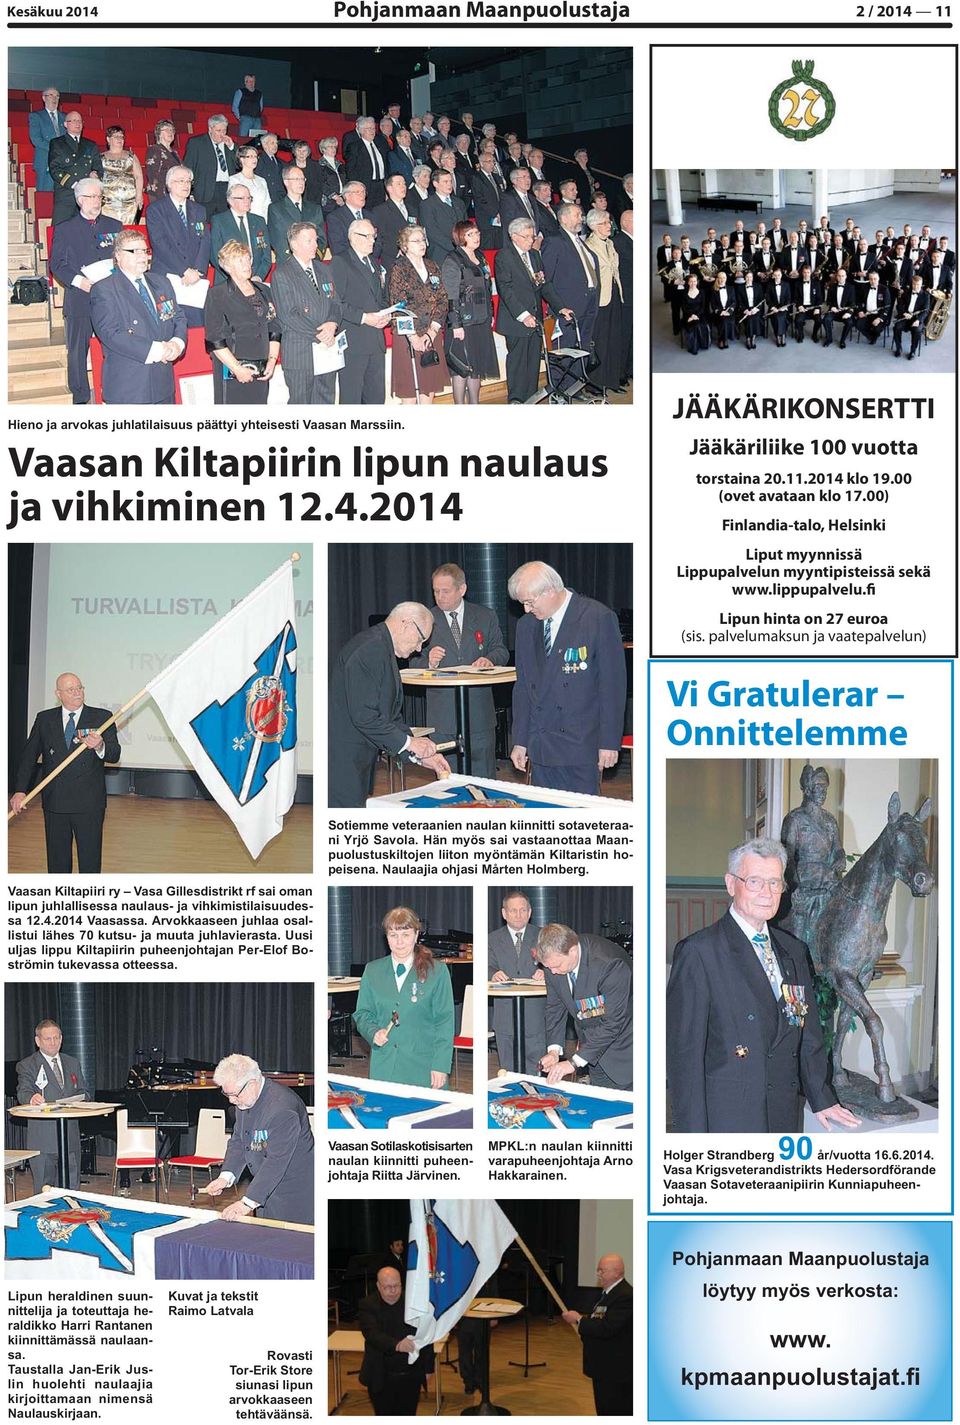 palvelumaksun ja vaatepalvelun) Vi Gratulerar Onnittelemme Vaasan Kiltapiiri ry Vasa Gillesdistrikt rf sai oman lipun juhlallisessa naulaus- ja vihkimistilaisuudessa 12.4.2014 Vaasassa.